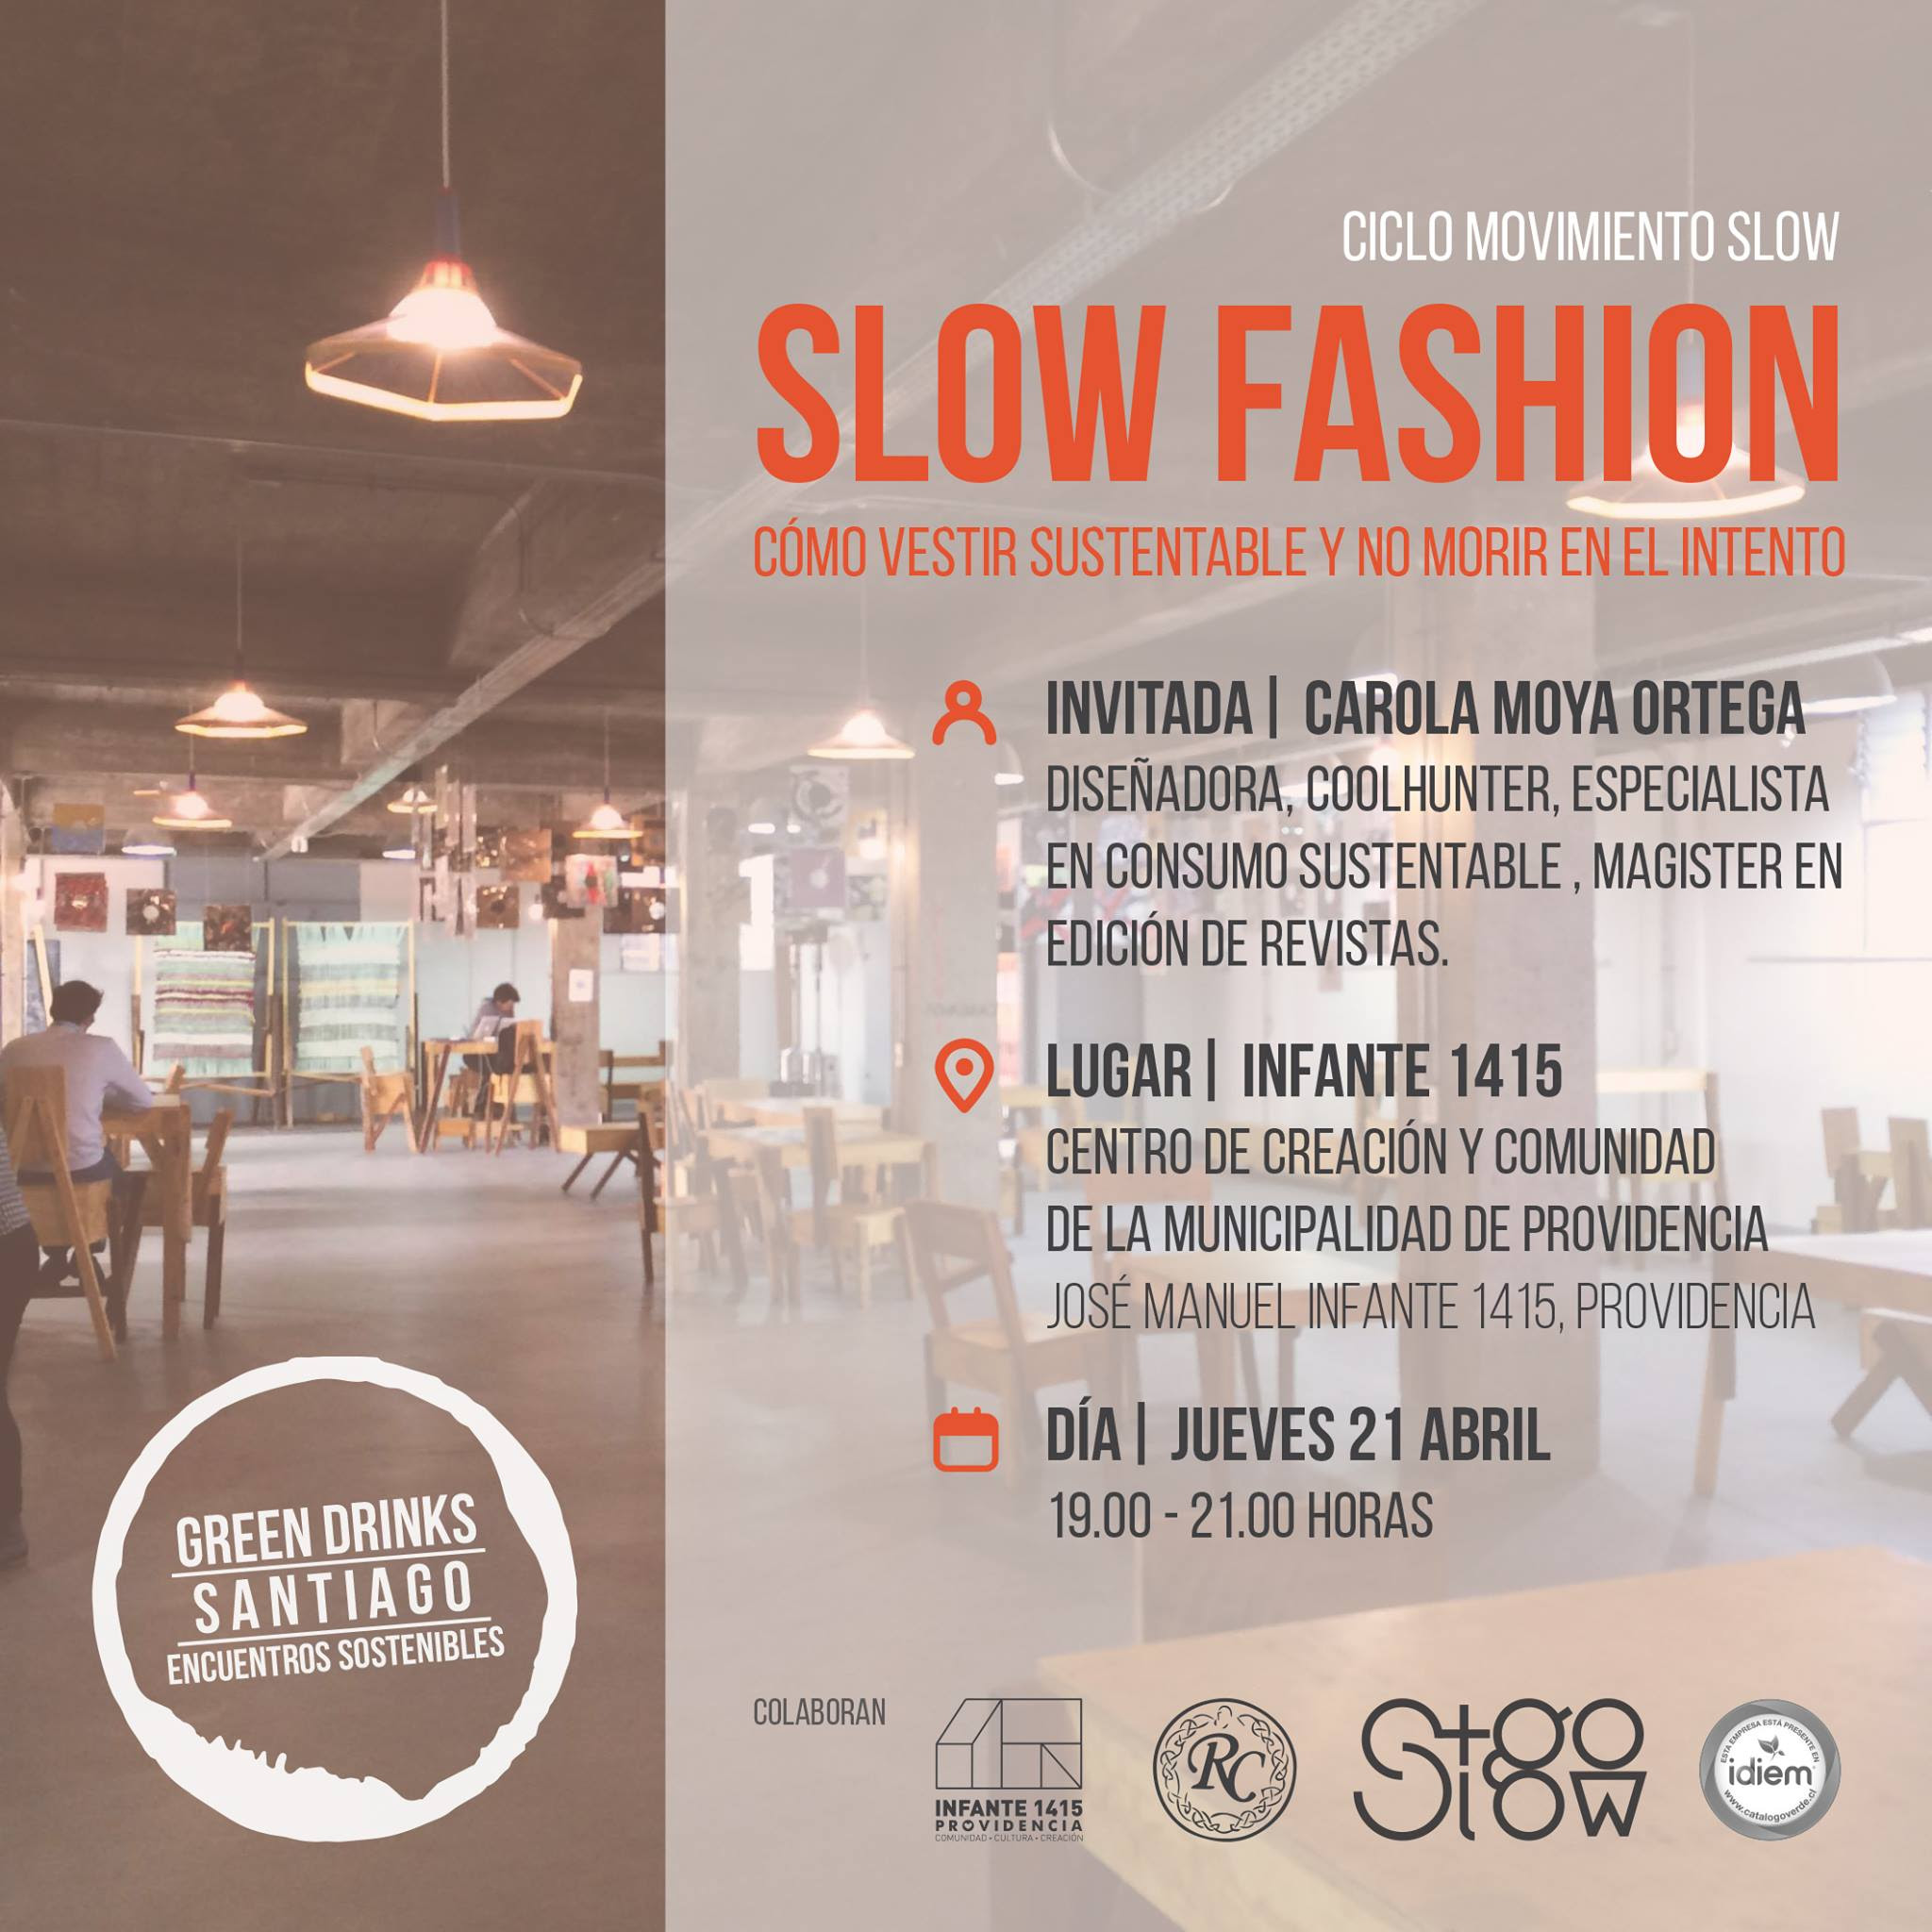 Este jueves: Charla Slow Fashion “Cómo vestir sustentable y no morir en el intento” en Green Drinks